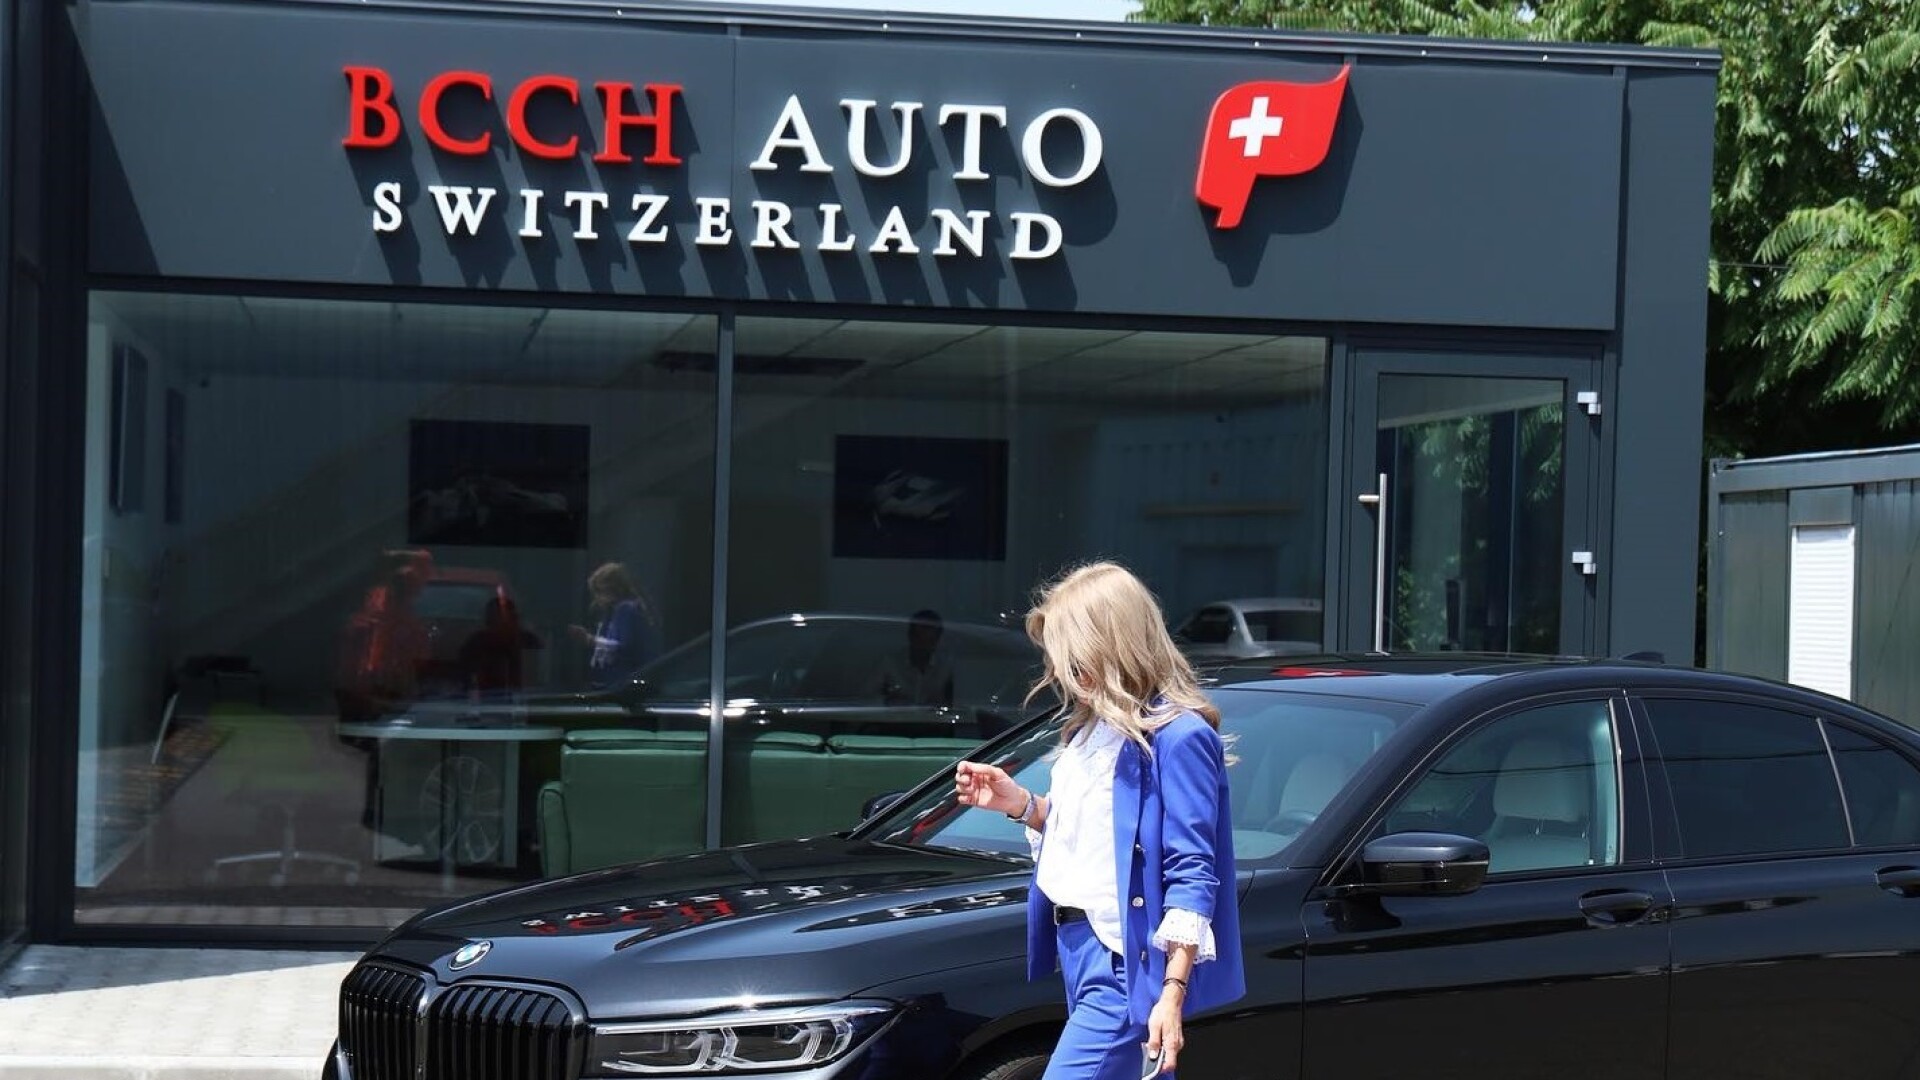 BCCH Auto Switzerland